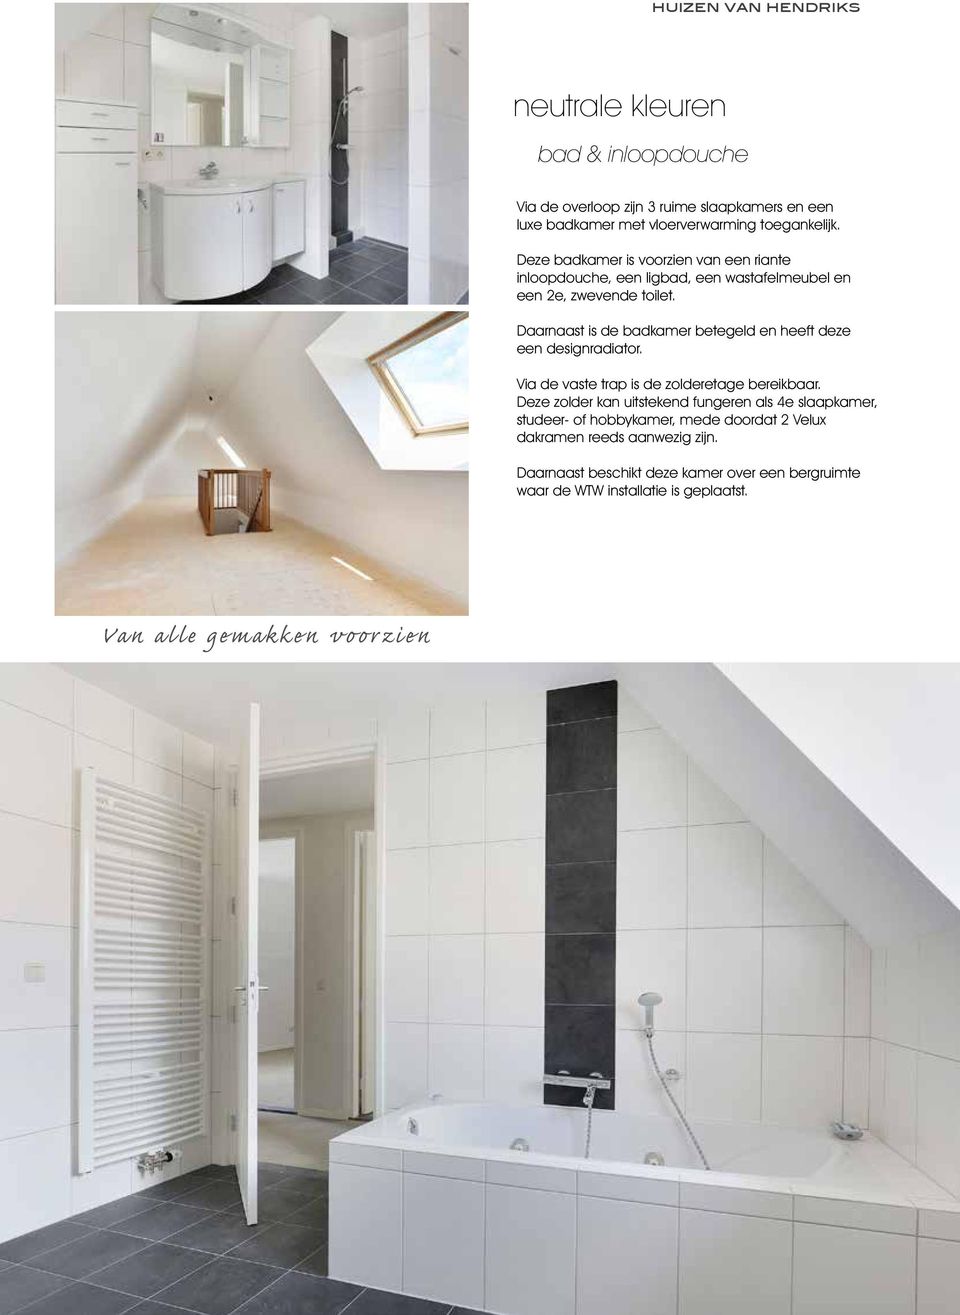 Daarnaast is de badkamer betegeld en heeft deze een designradiator. Via de vaste trap is de zolderetage bereikbaar.